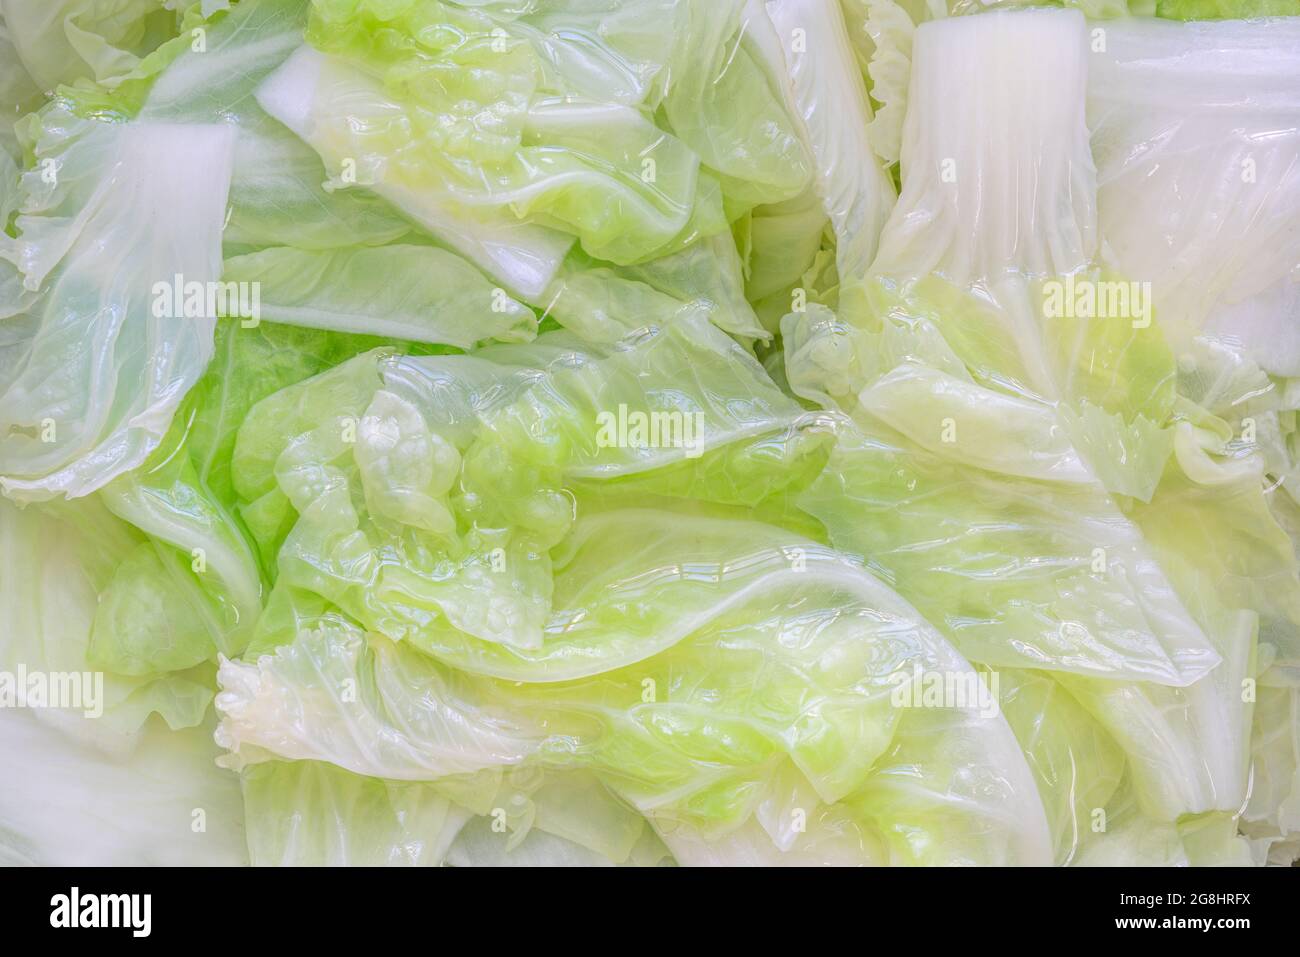 Beim Blanchieren von Gemüse oder Kohl, die in kaltem Wasser getränkt sind, füllen Sie den Bildrahmen mit Gemüse in Wasser. Stockfoto